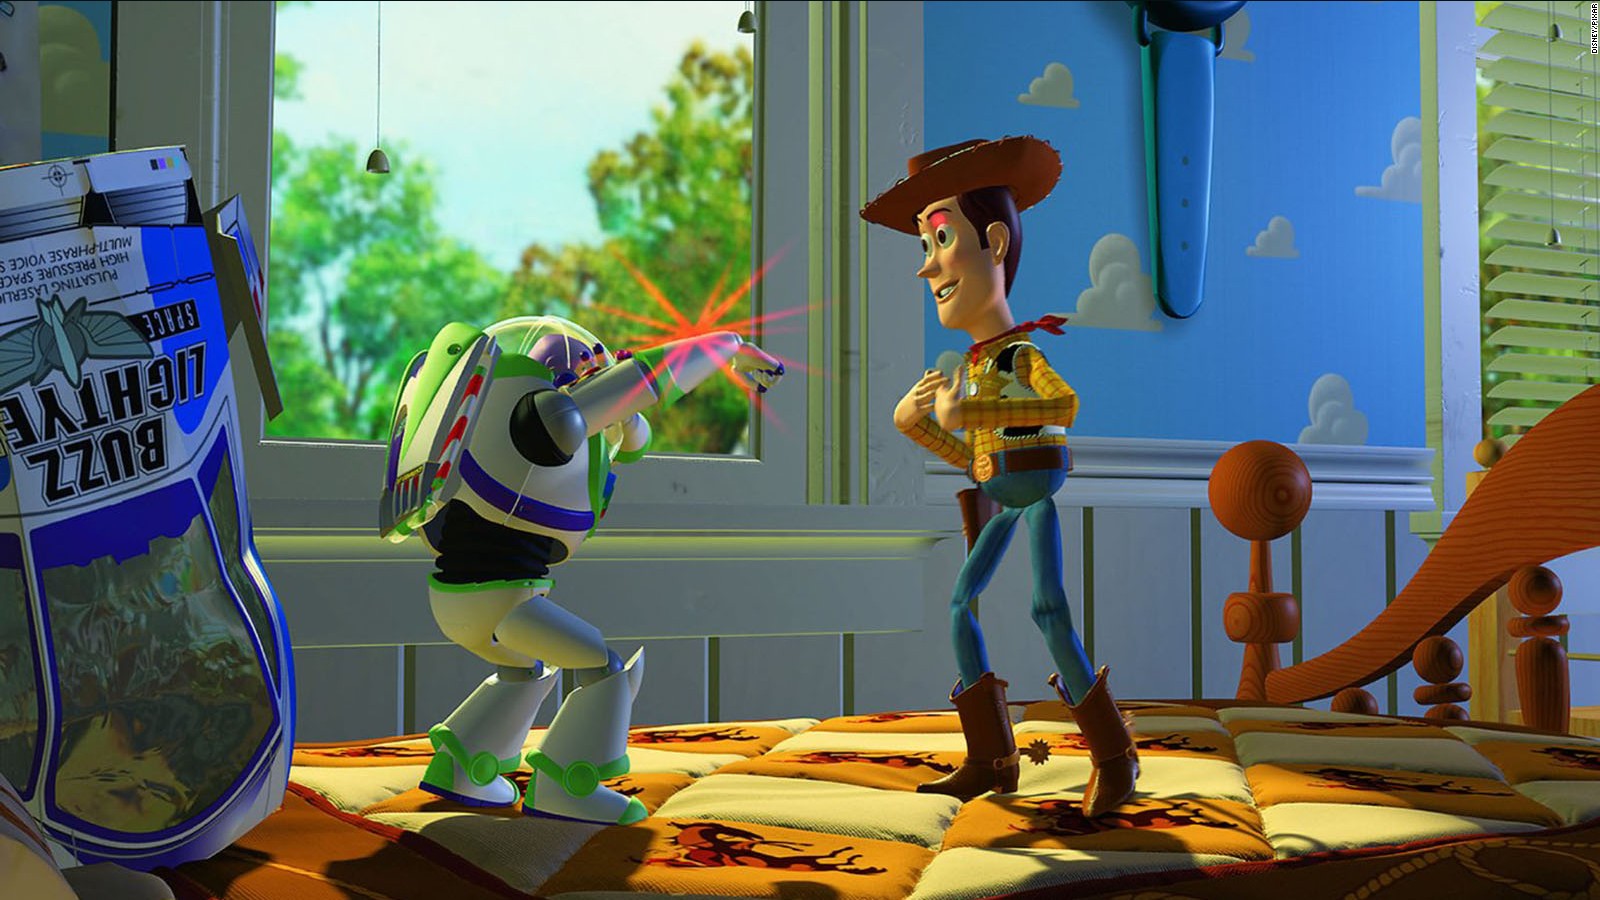 Atar resistencia Kosciuszko Toy Story" se estrenó hace 22 años: ¿cómo cambió al cine? | Video | CNN